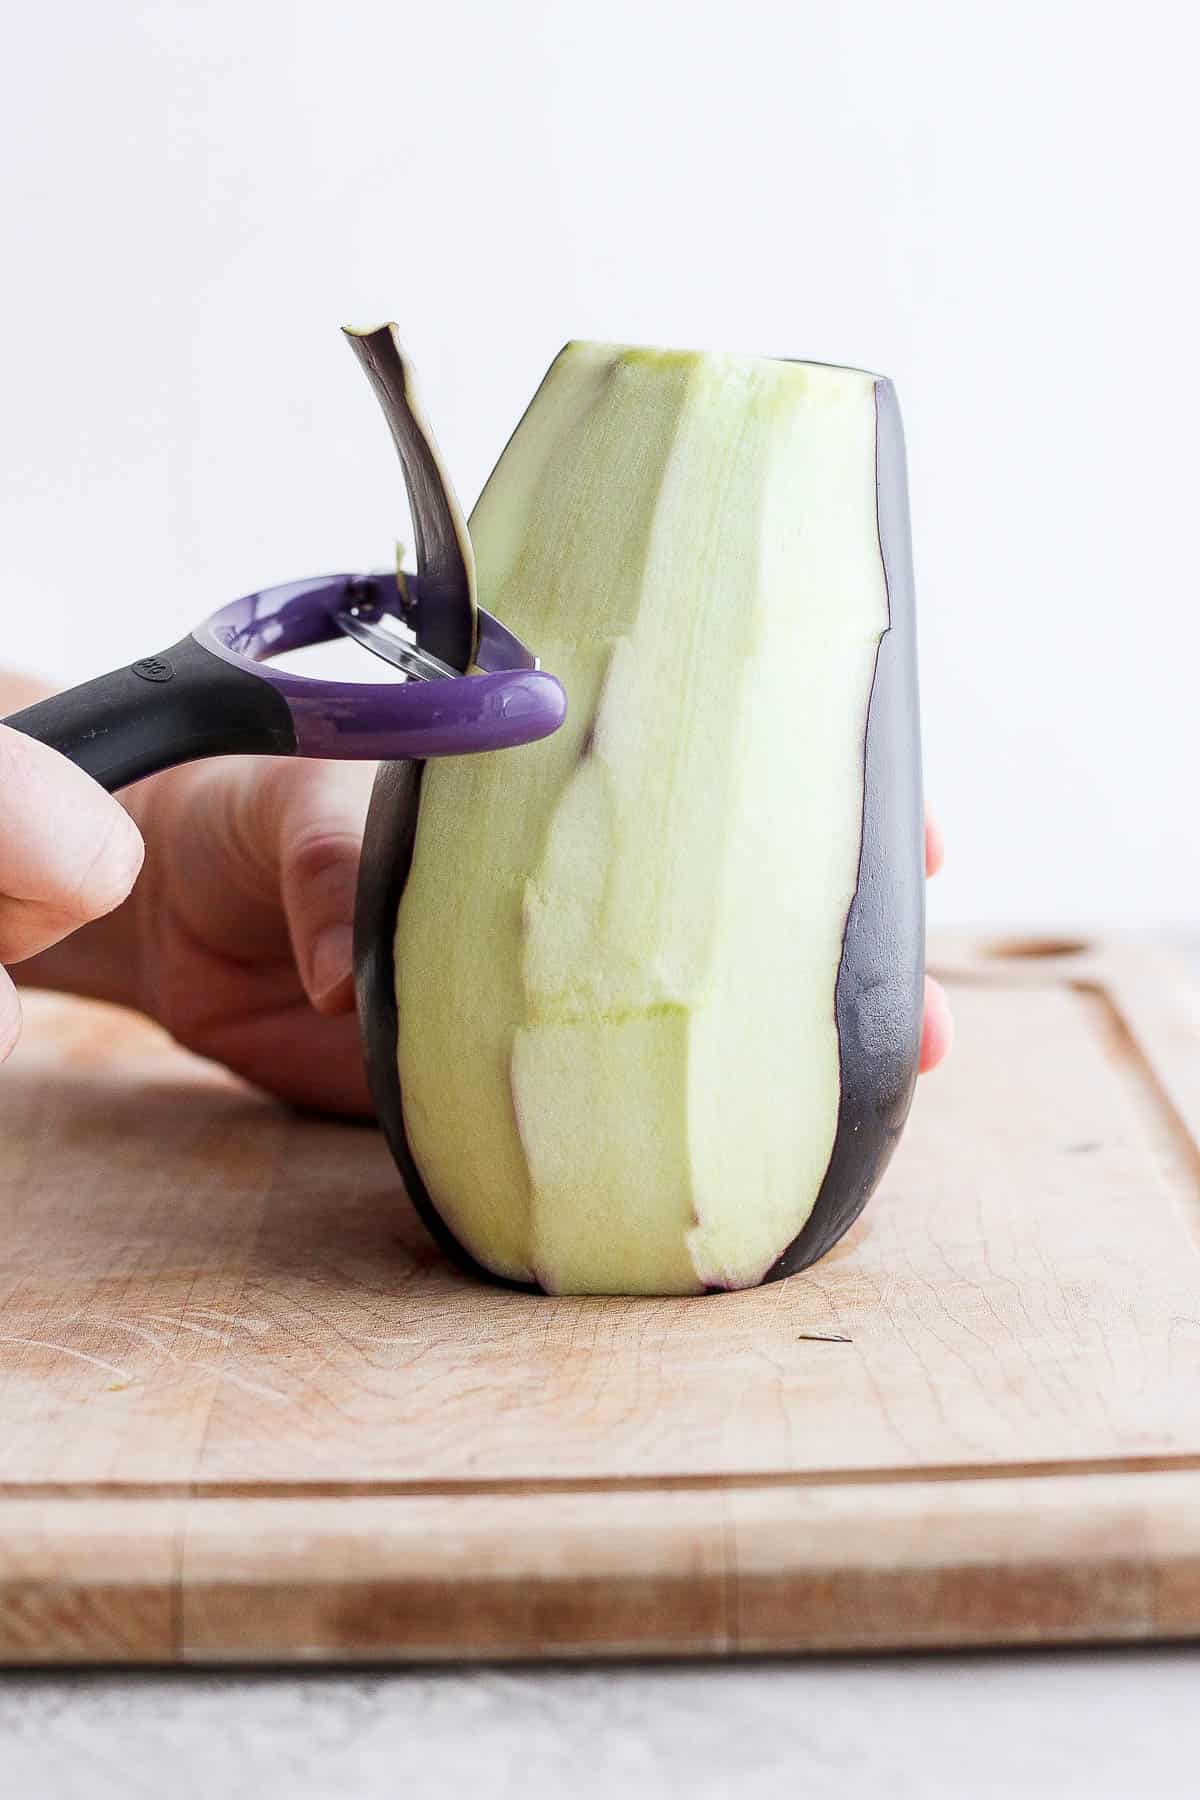 Peeling eggplant with wide peeler